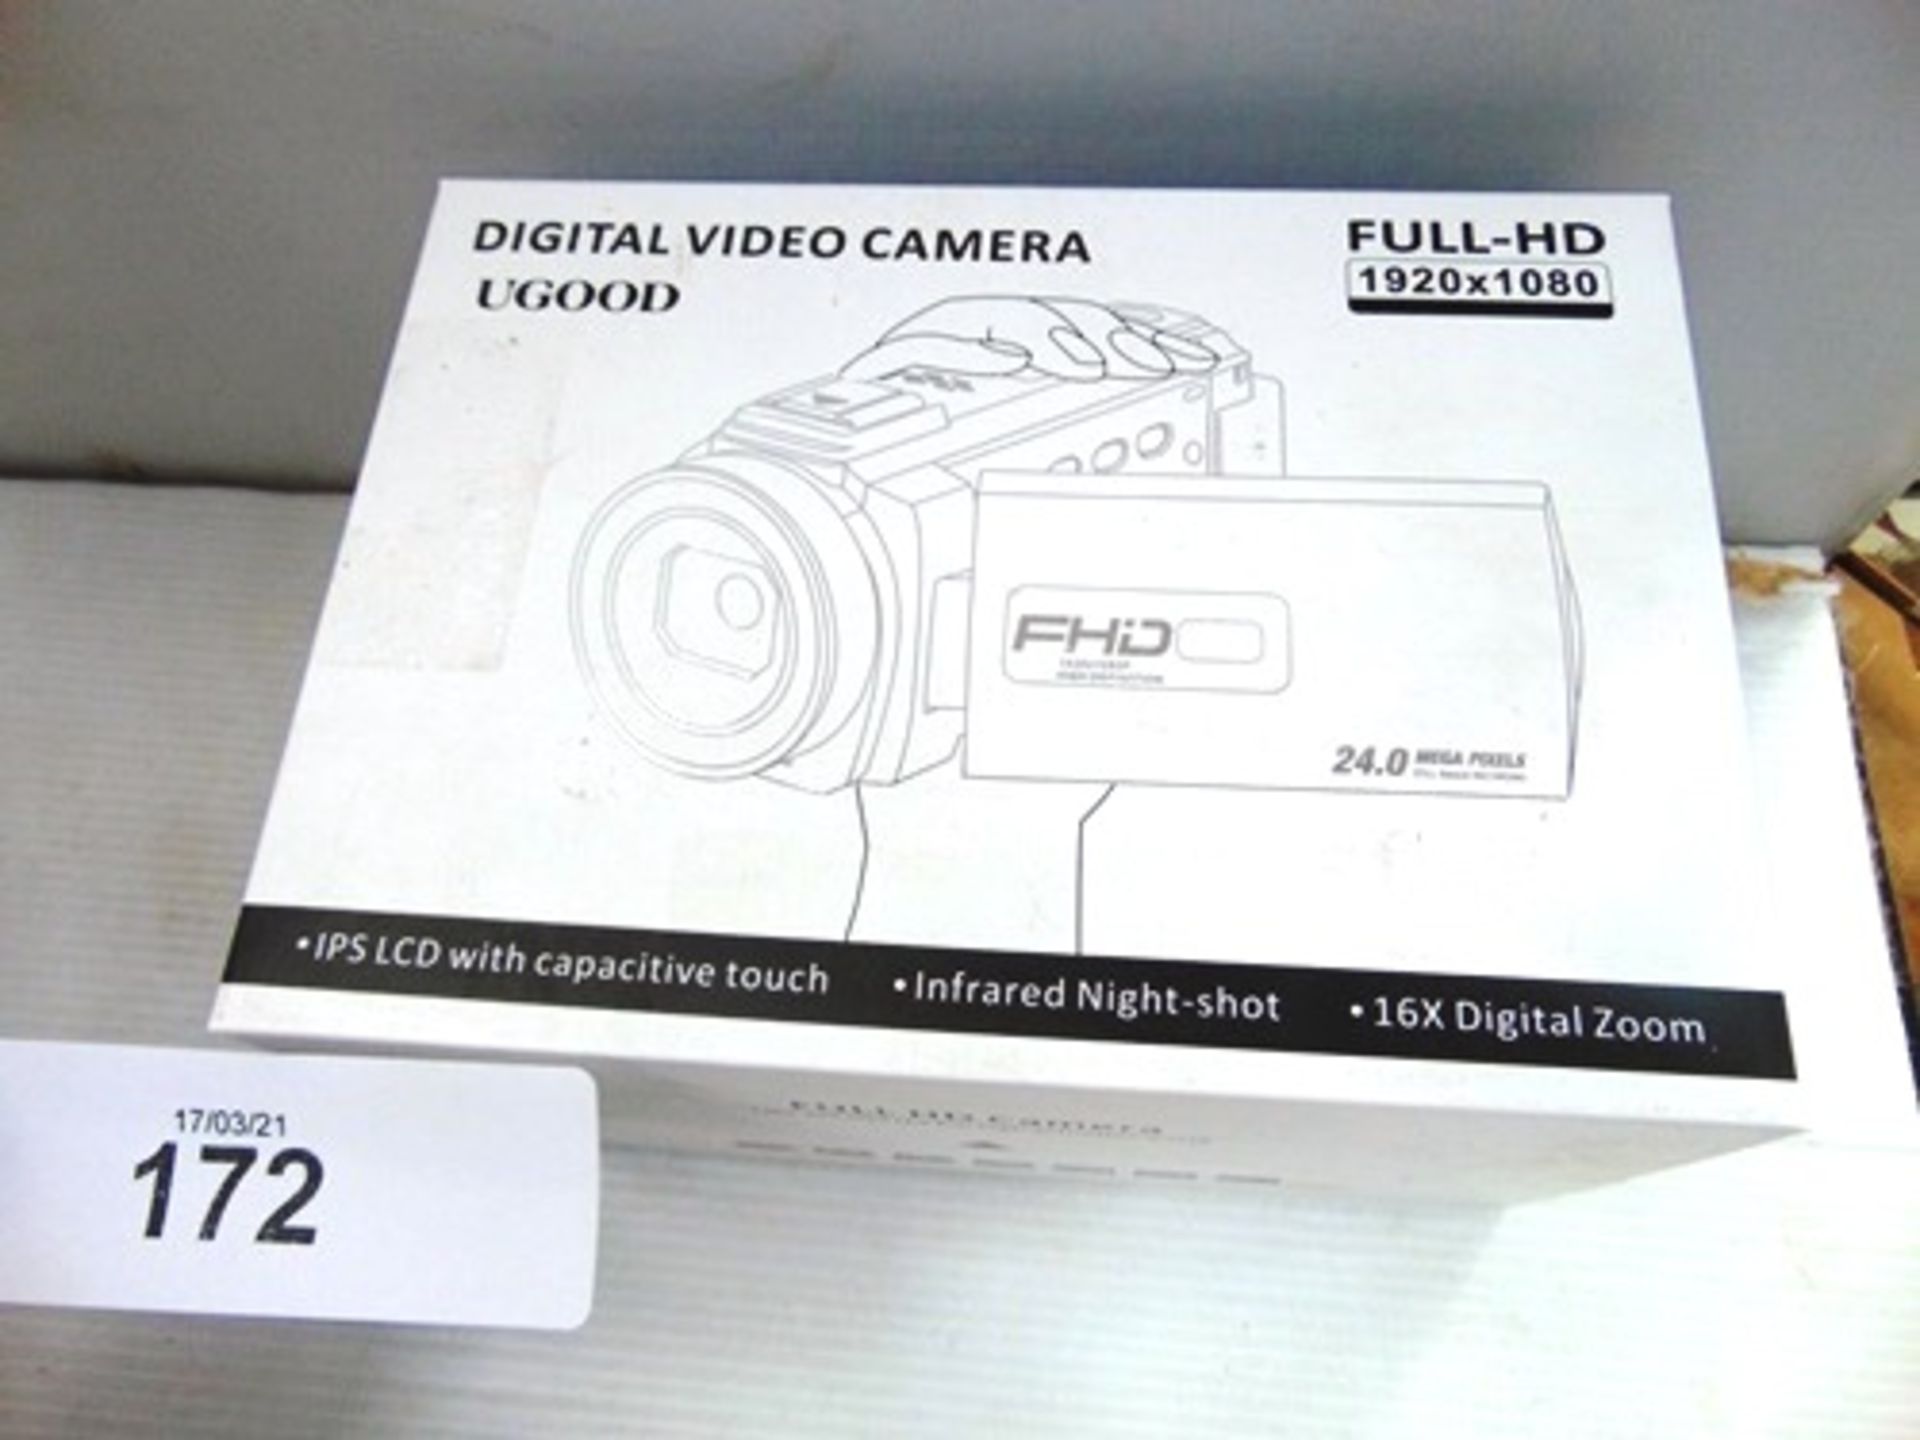 1 x UGOOD digital video camera, model HDV-2053STRM, 24 mega pixels, Full HD 1920 x 1080 - New in